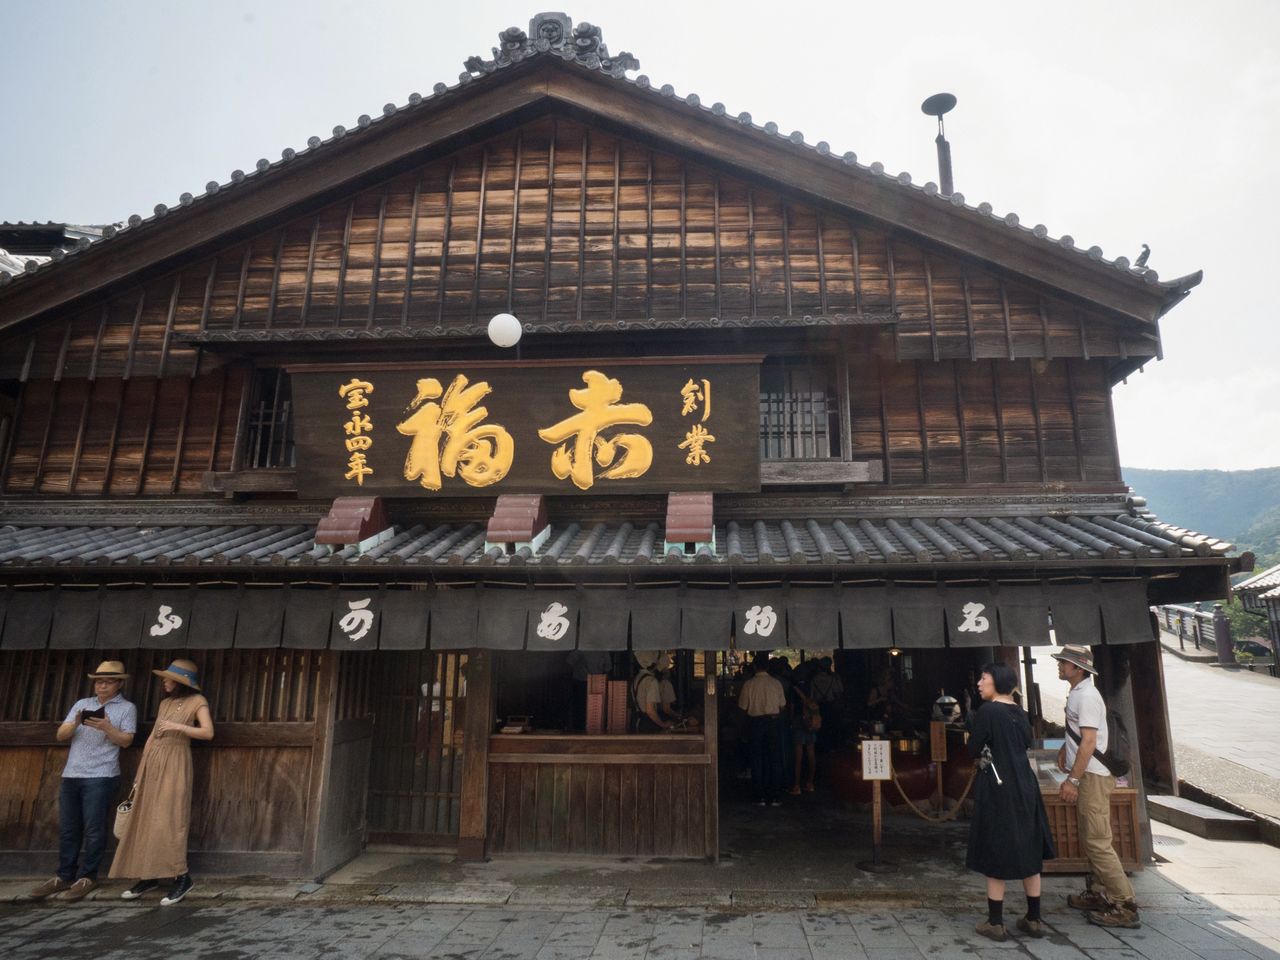 The original Akafuku shop gives off an air of its history.